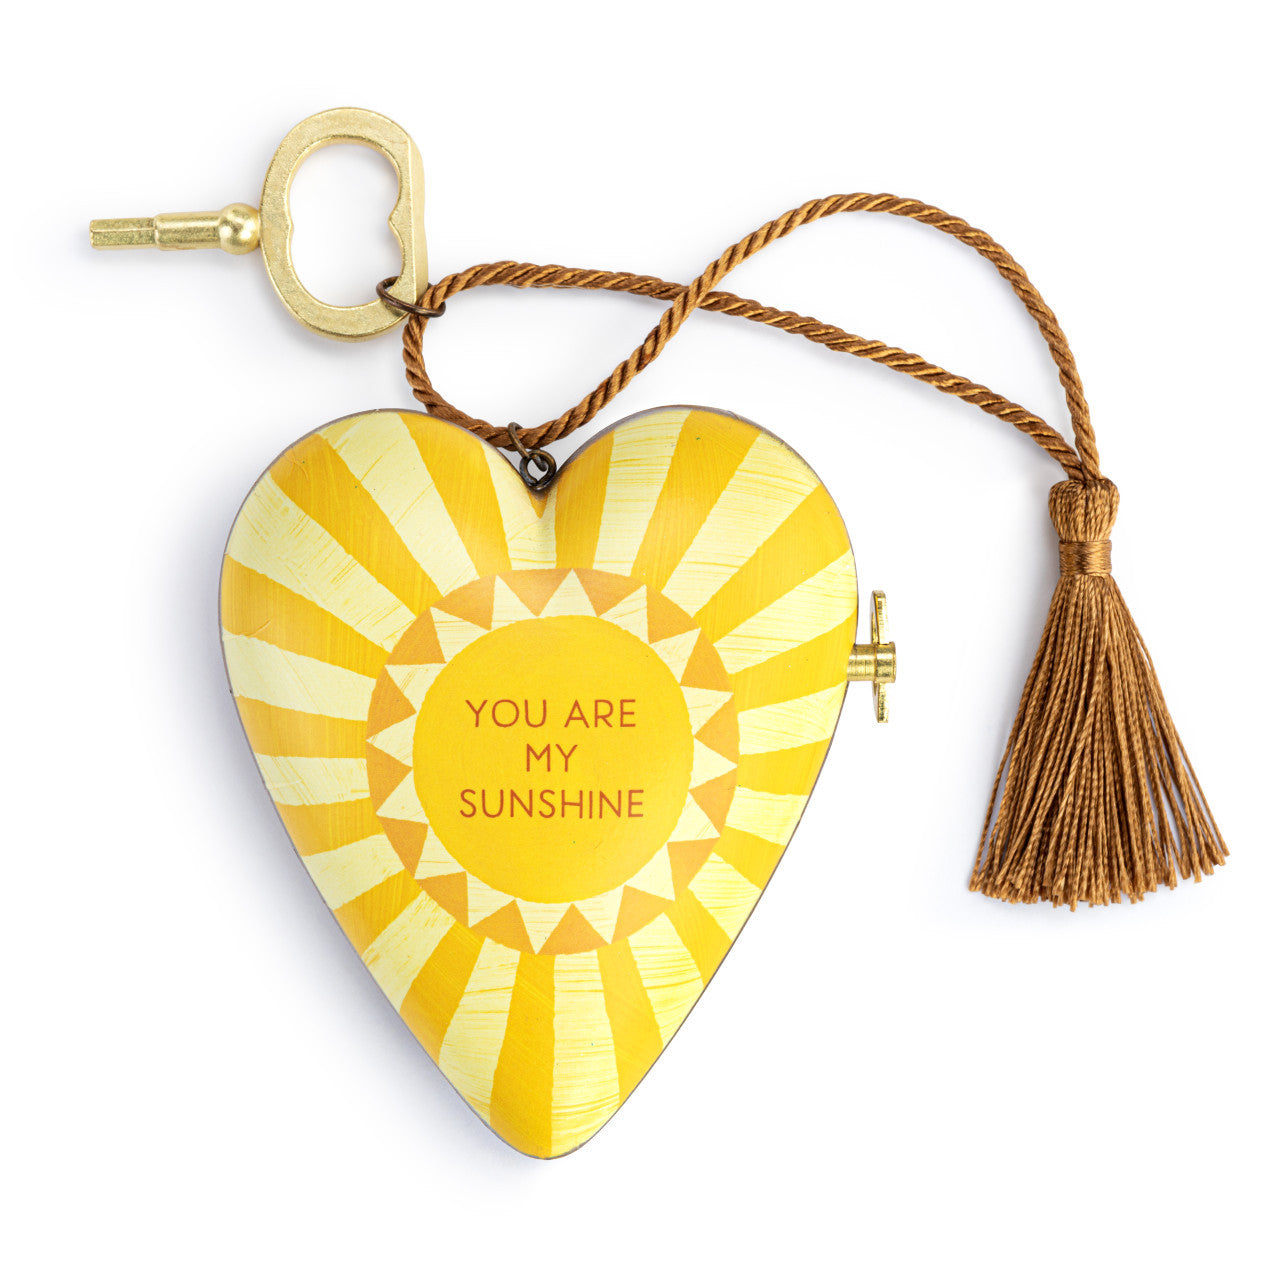 My Sunshine Musical Art Heart - Zinnias Gift Boutique